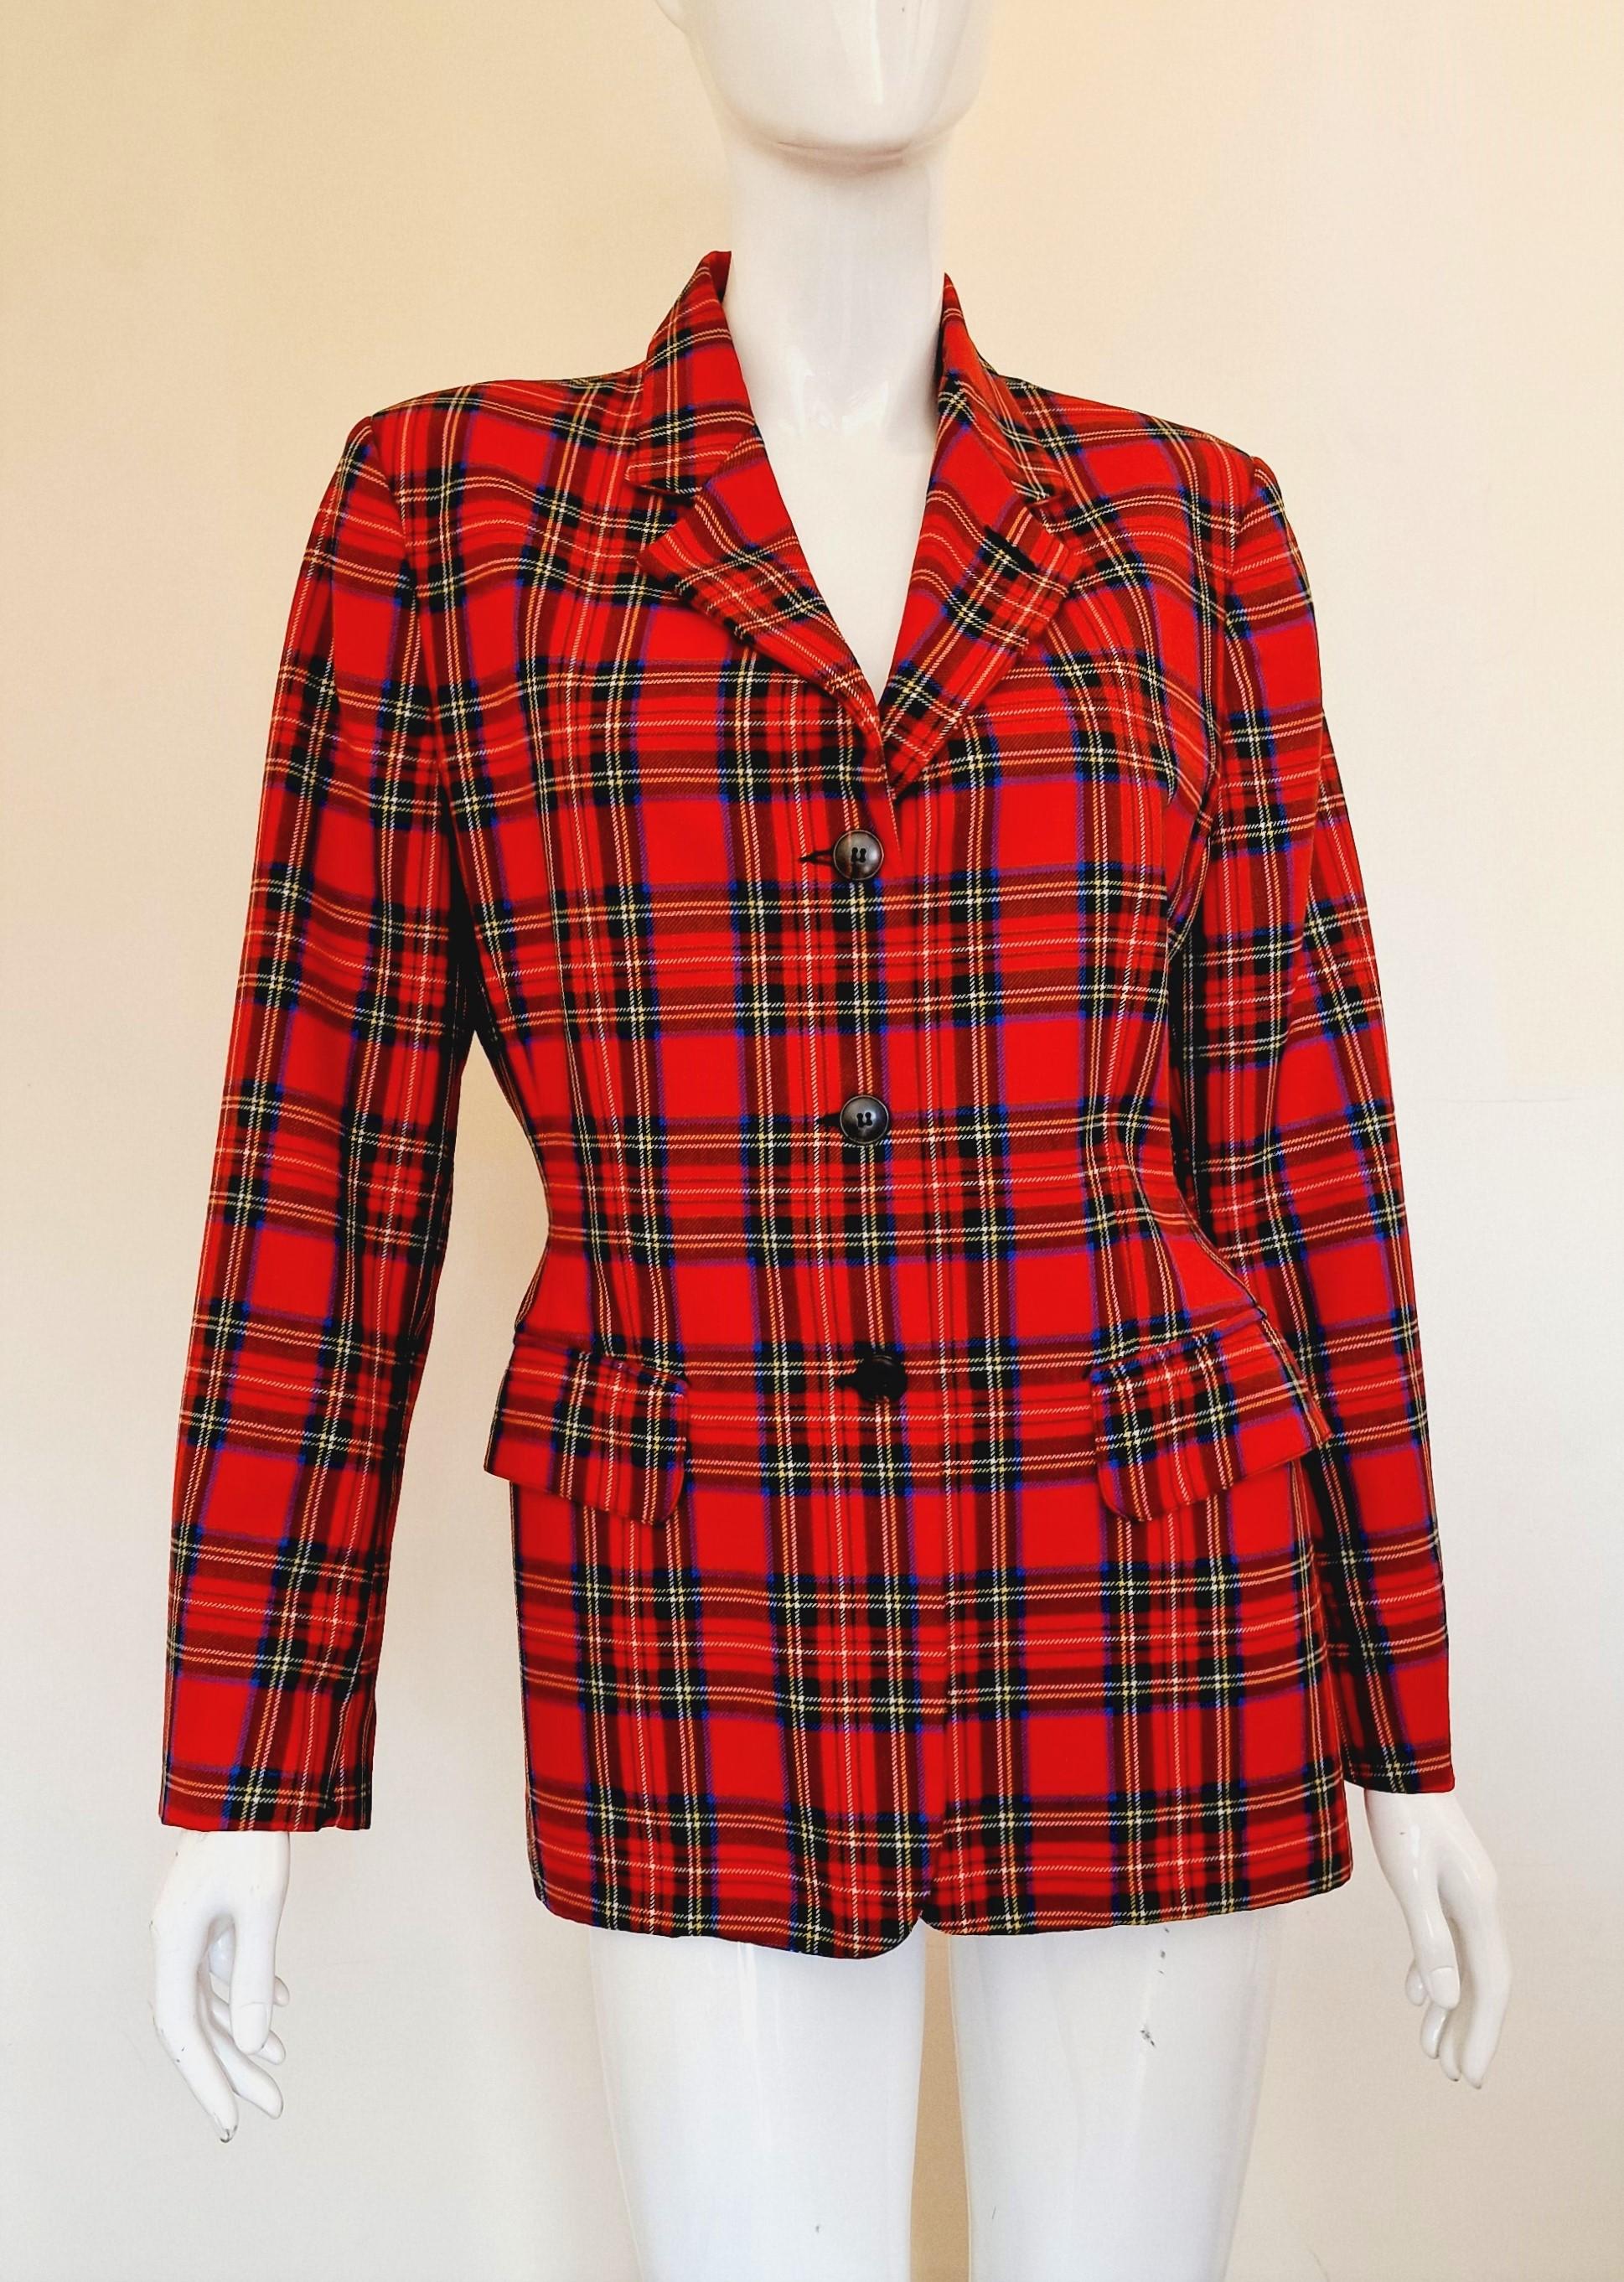 Jean Paul Gaultier Red Tartan Wool Junior Vintage Punk Fight Blazer Suit Jacket For Sale 1